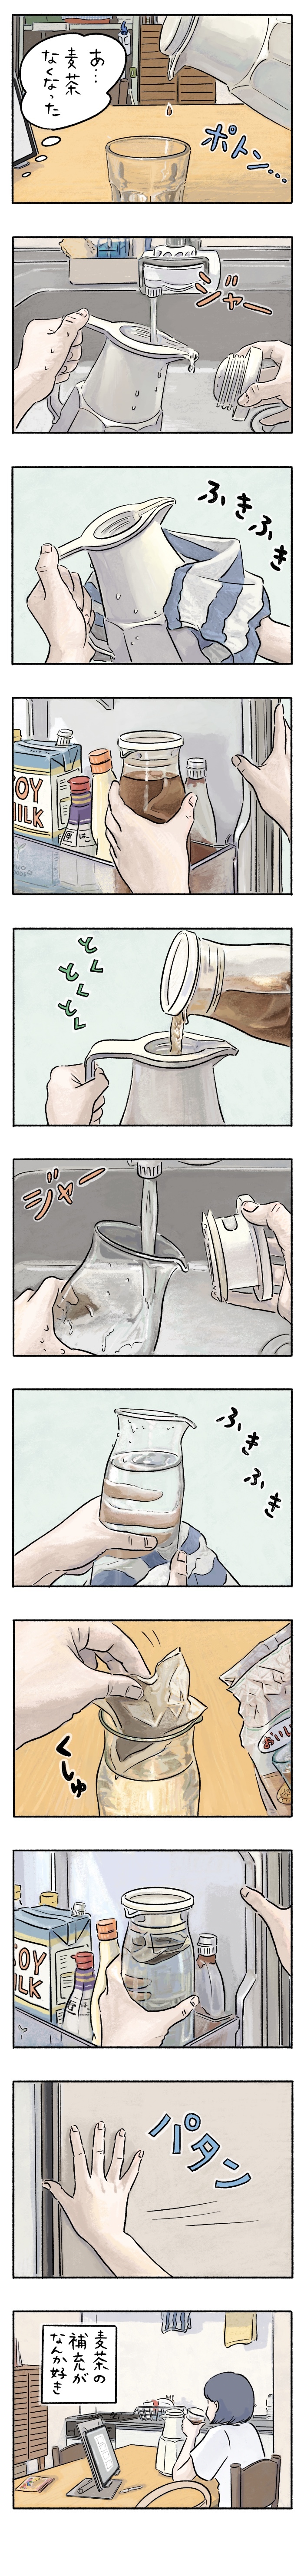 パパが作る「大阪イチ」のミルクできょうもみんな幸せ＜第５回投稿コンテスト NO.１２４＞の画像1